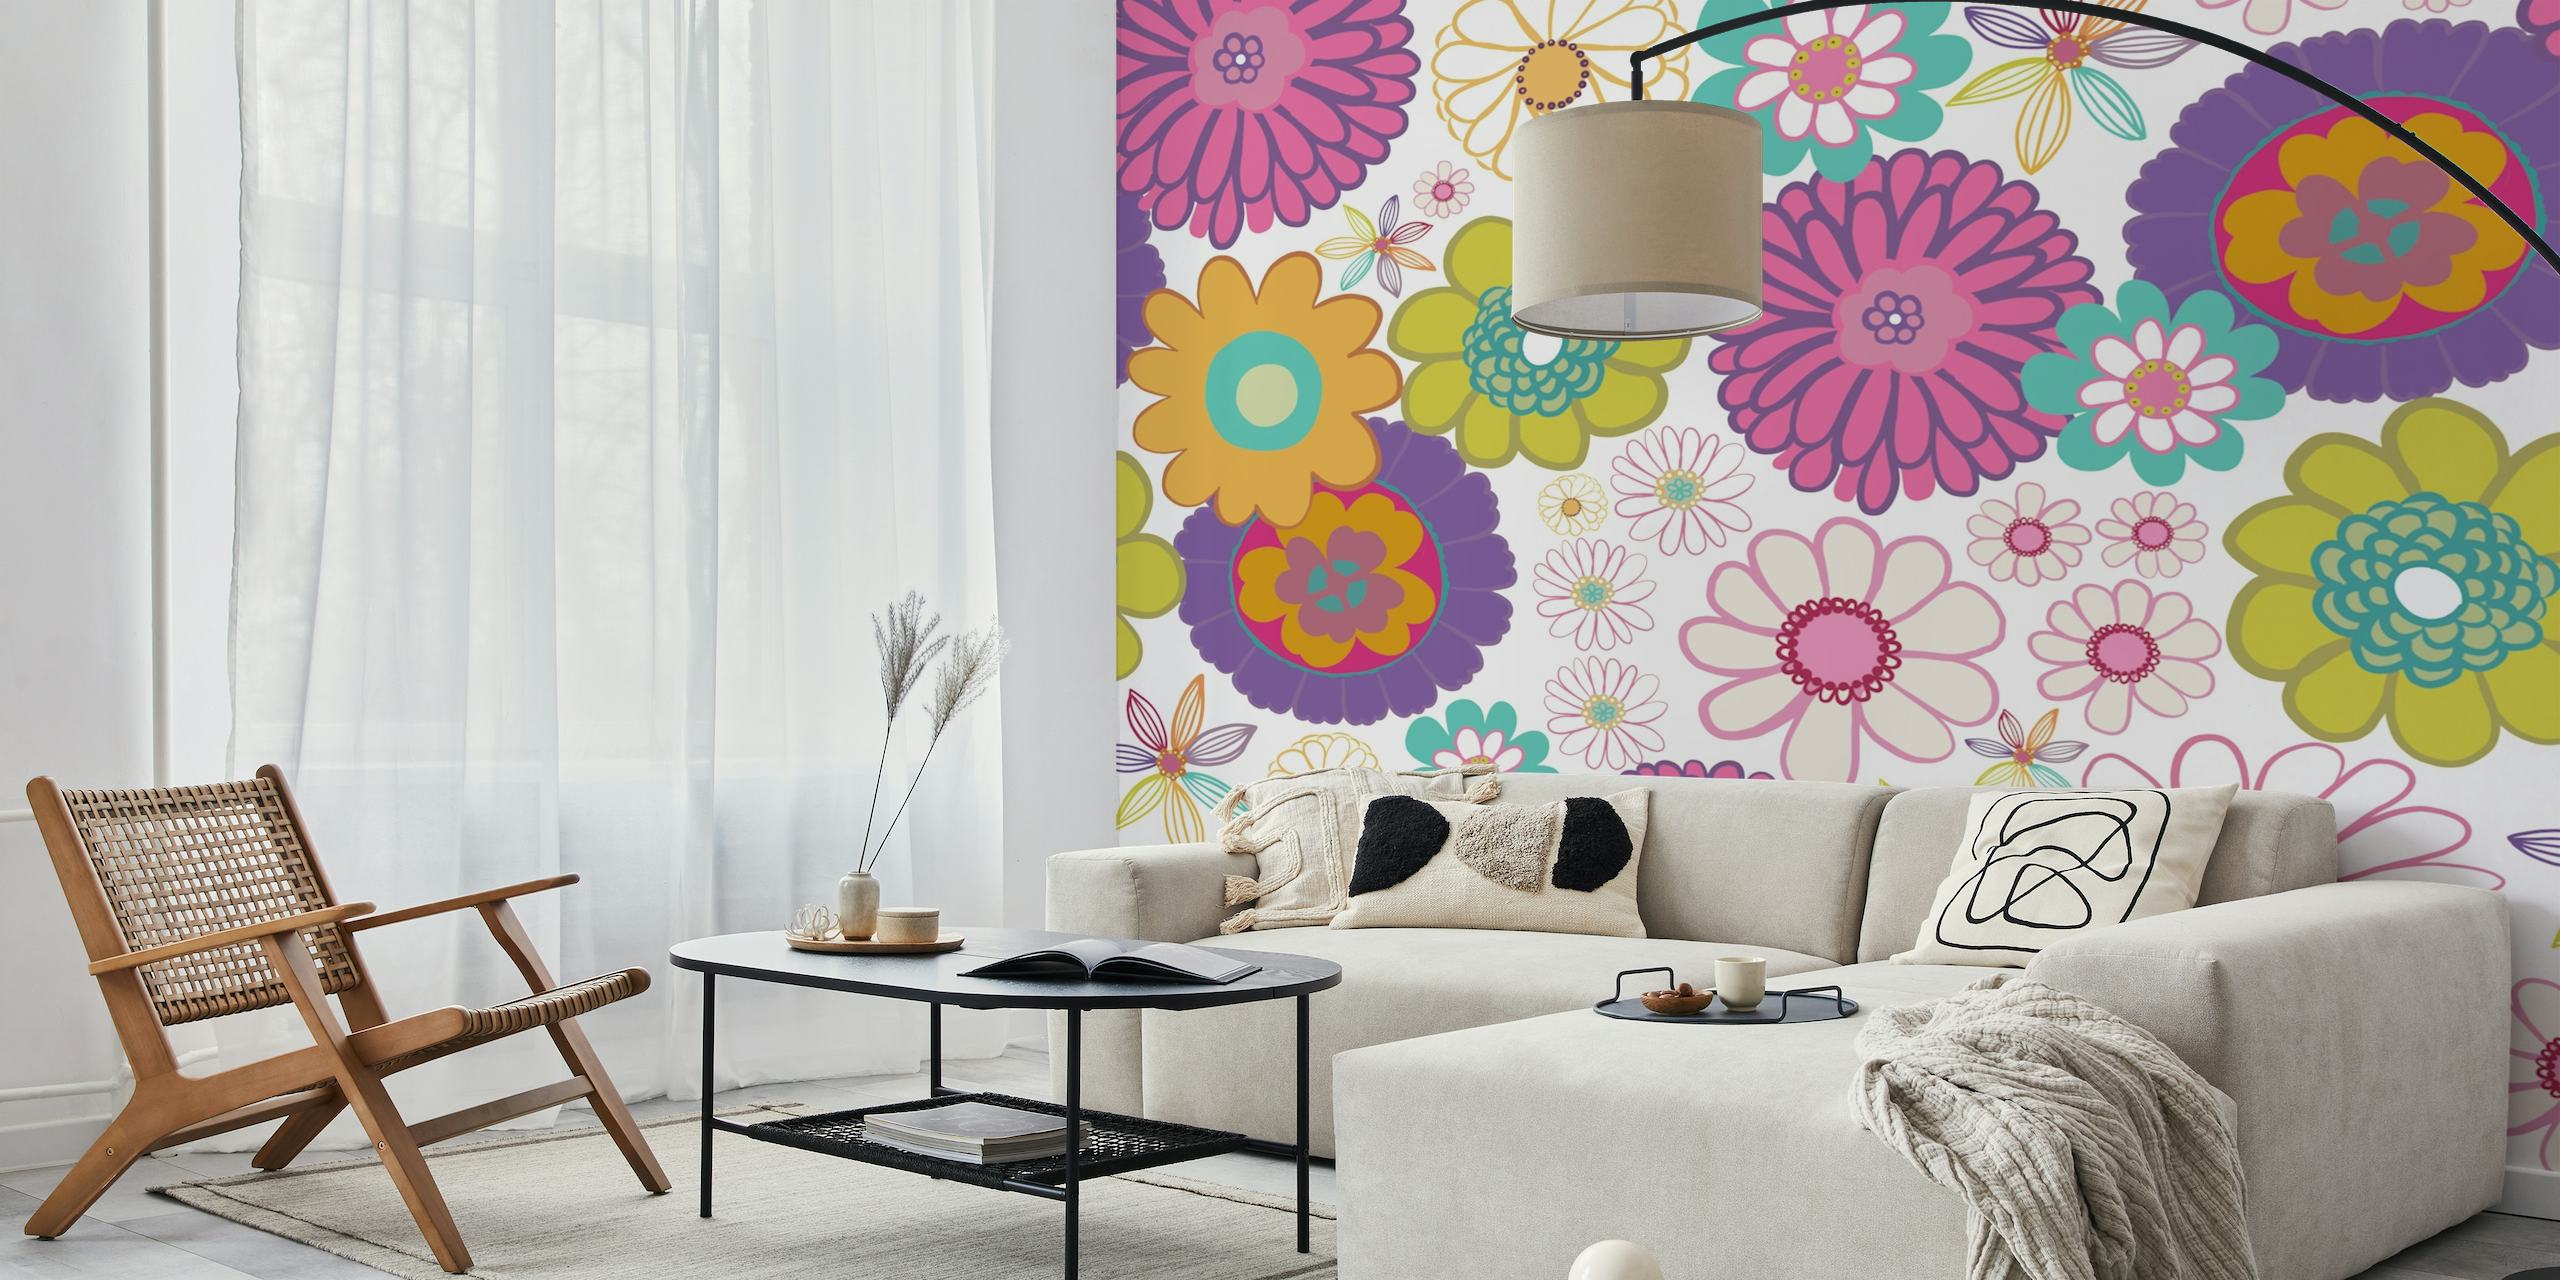 Colorido mural de pared con estampado floral con una mezcla de estilos vintage y moderno